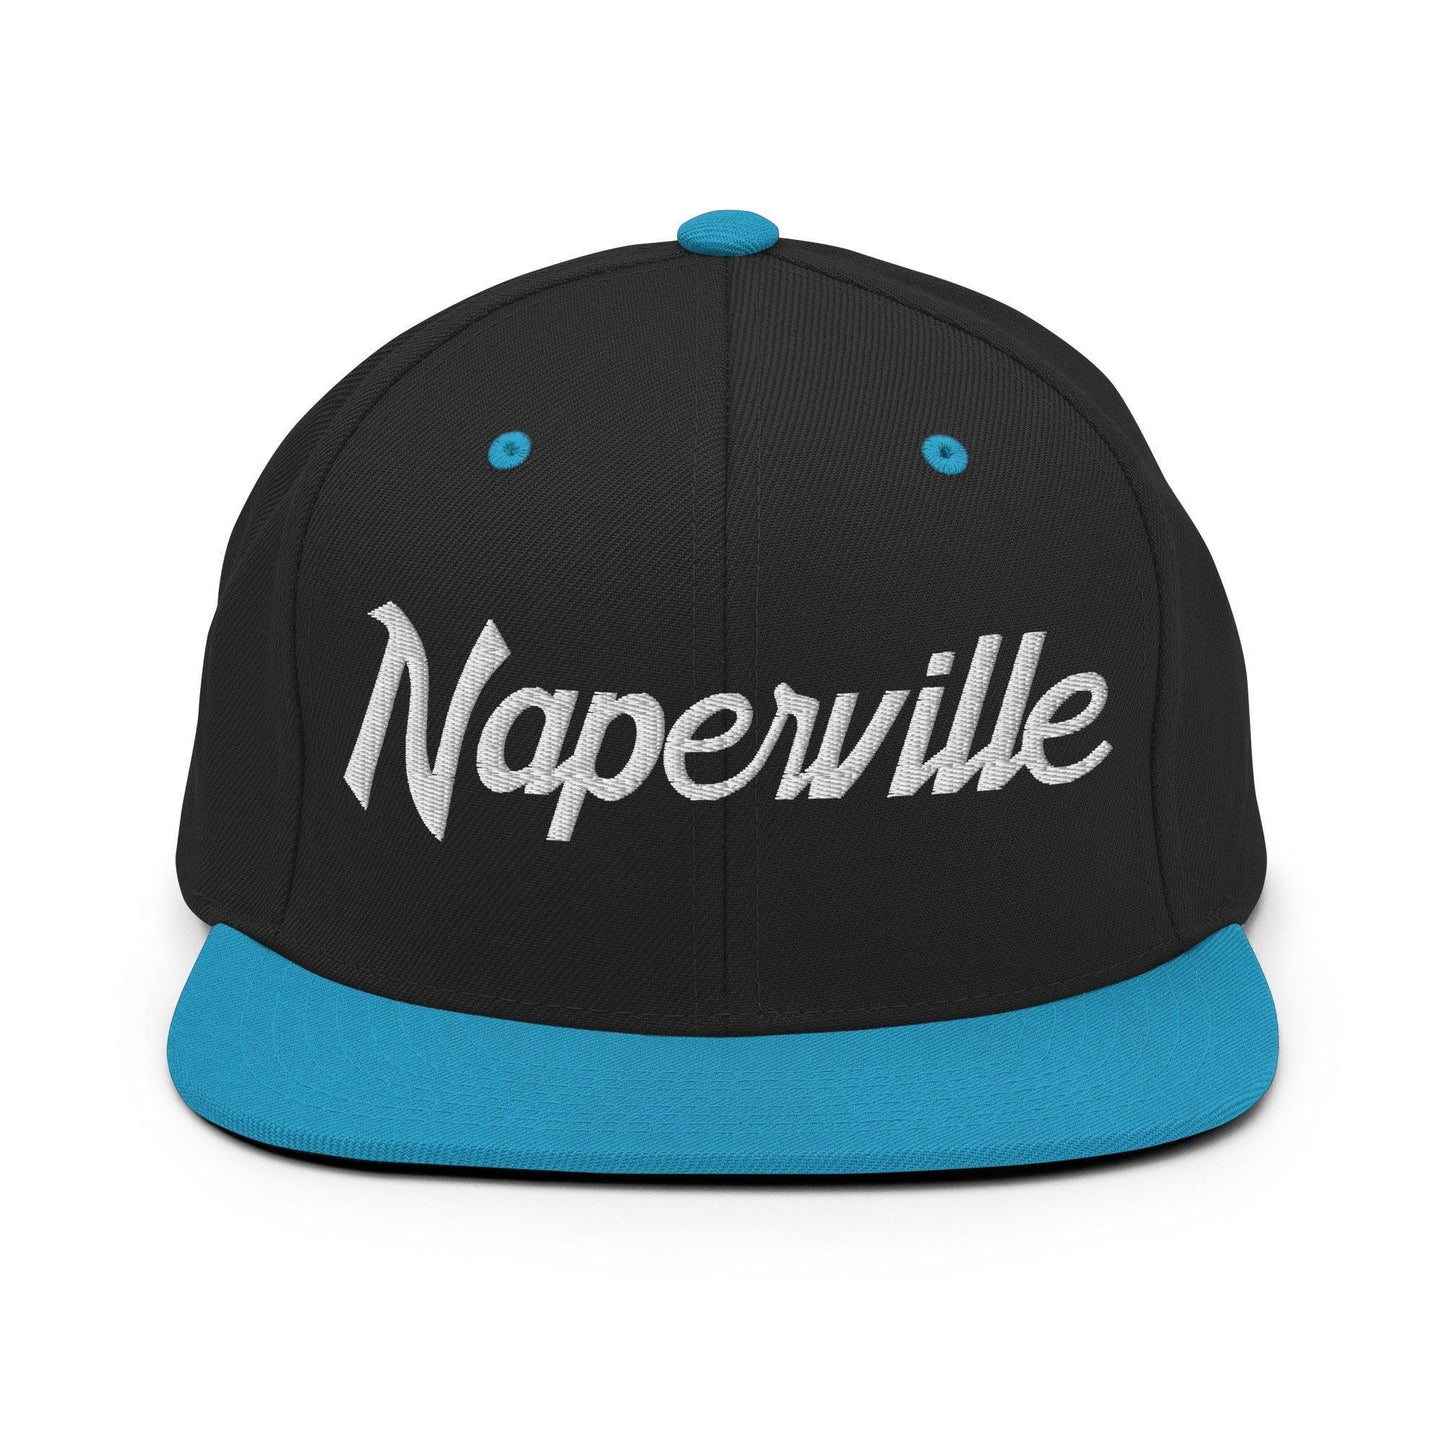 Naperville Script Snapback Hat Black Teal